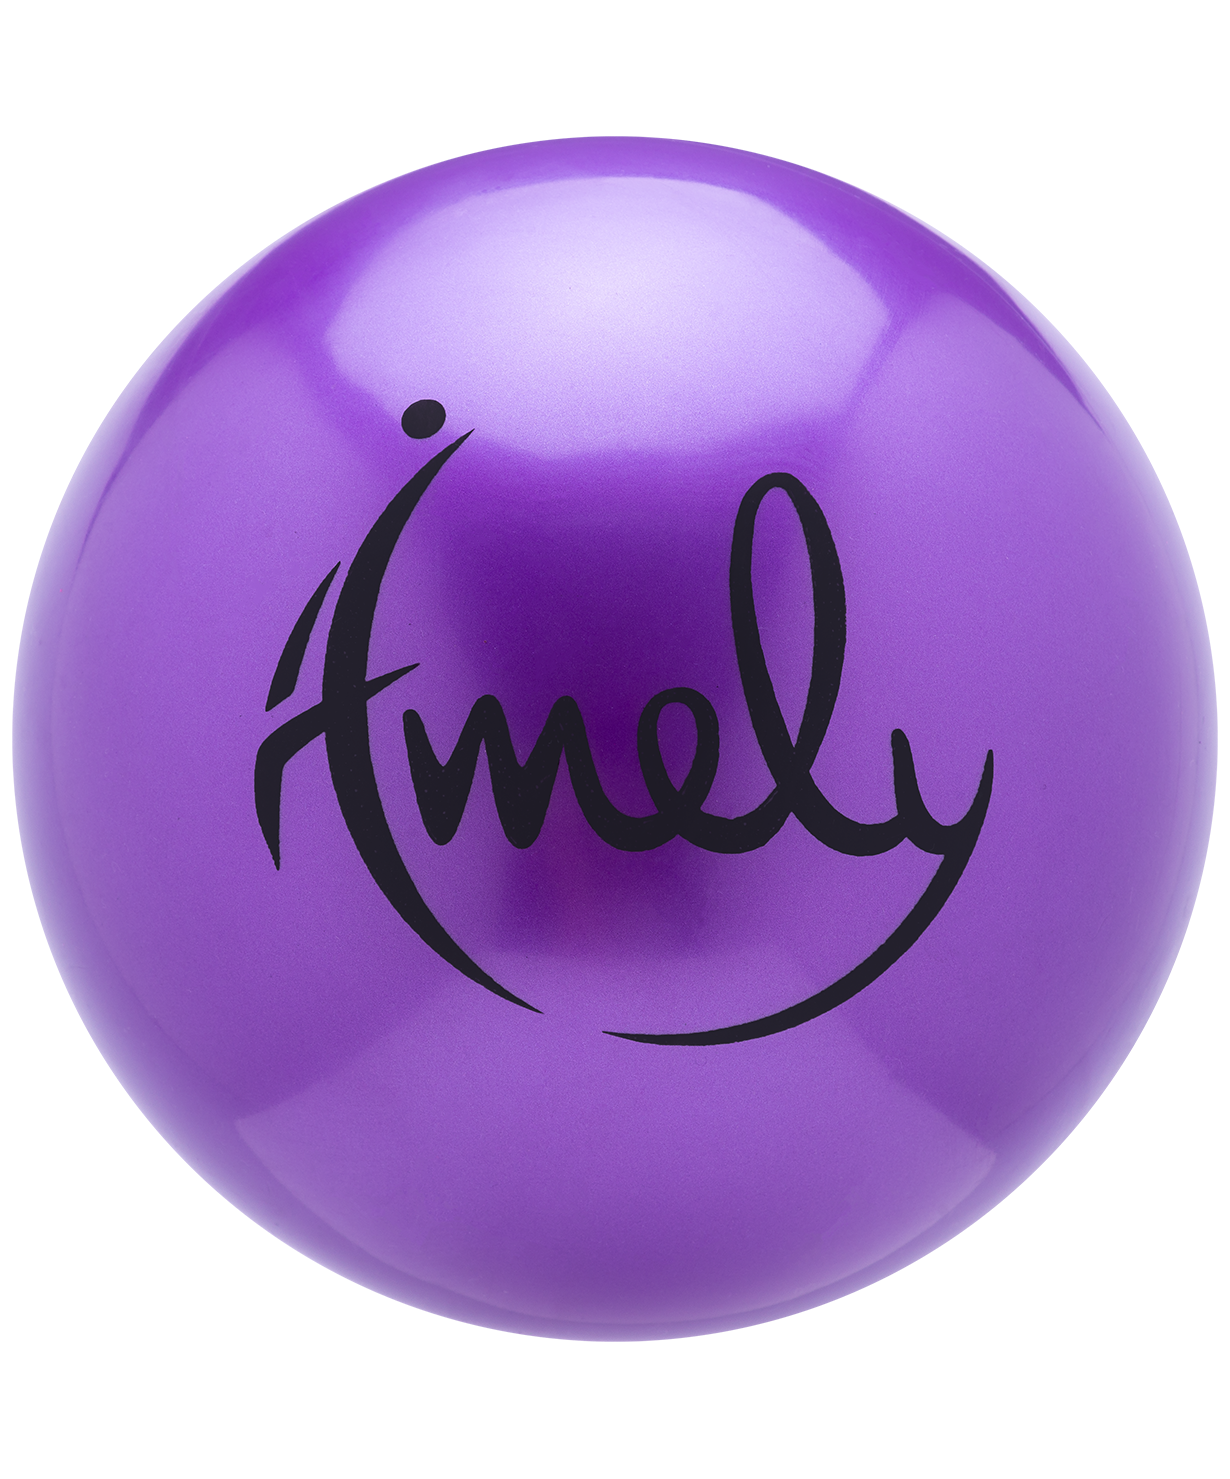 фото Мяч для художественной гимнастики amely agb-301 19 см, фиолетовый